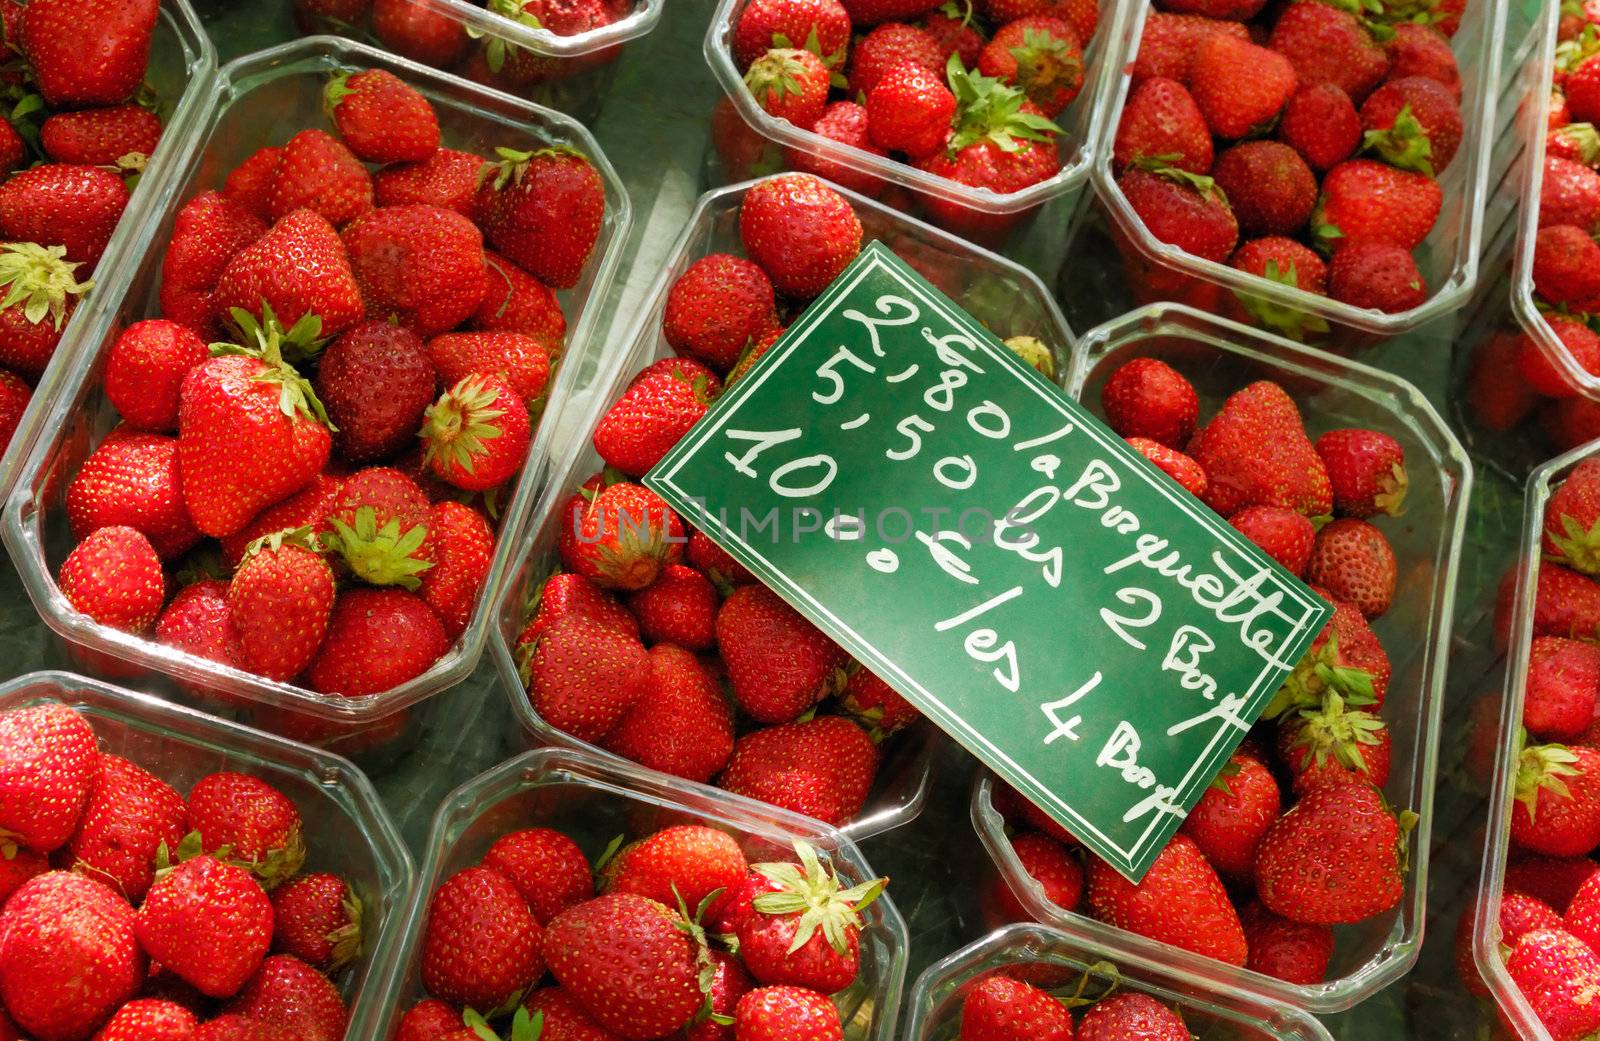 Selling strawberries by akarelias